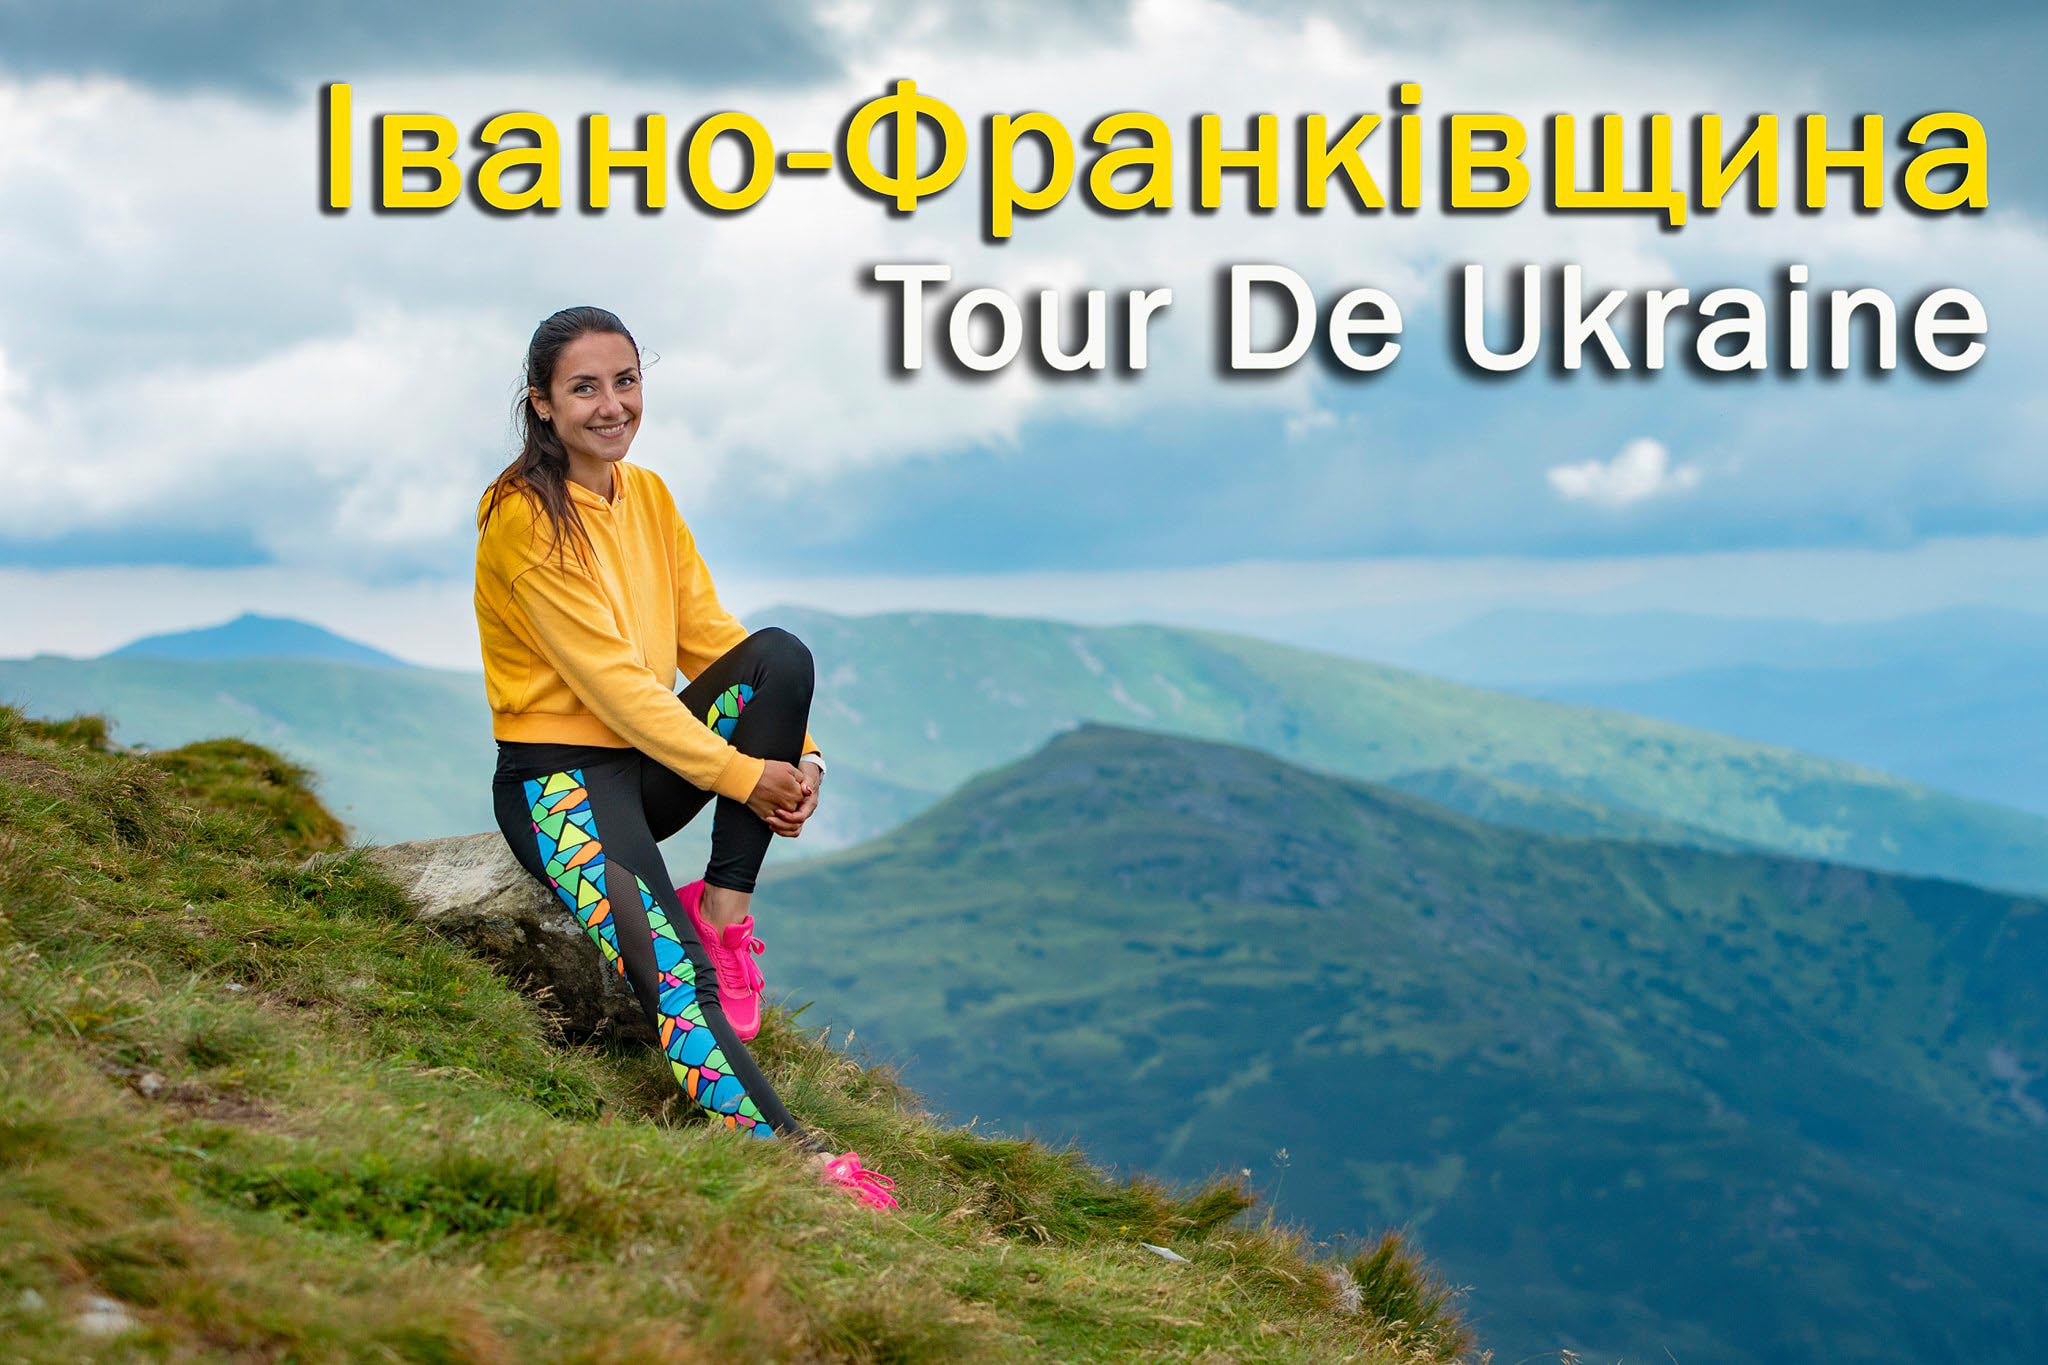 Tour De Ukraine: відома українська тревел-блогерка зніме контент про туризм на Прикарпатті